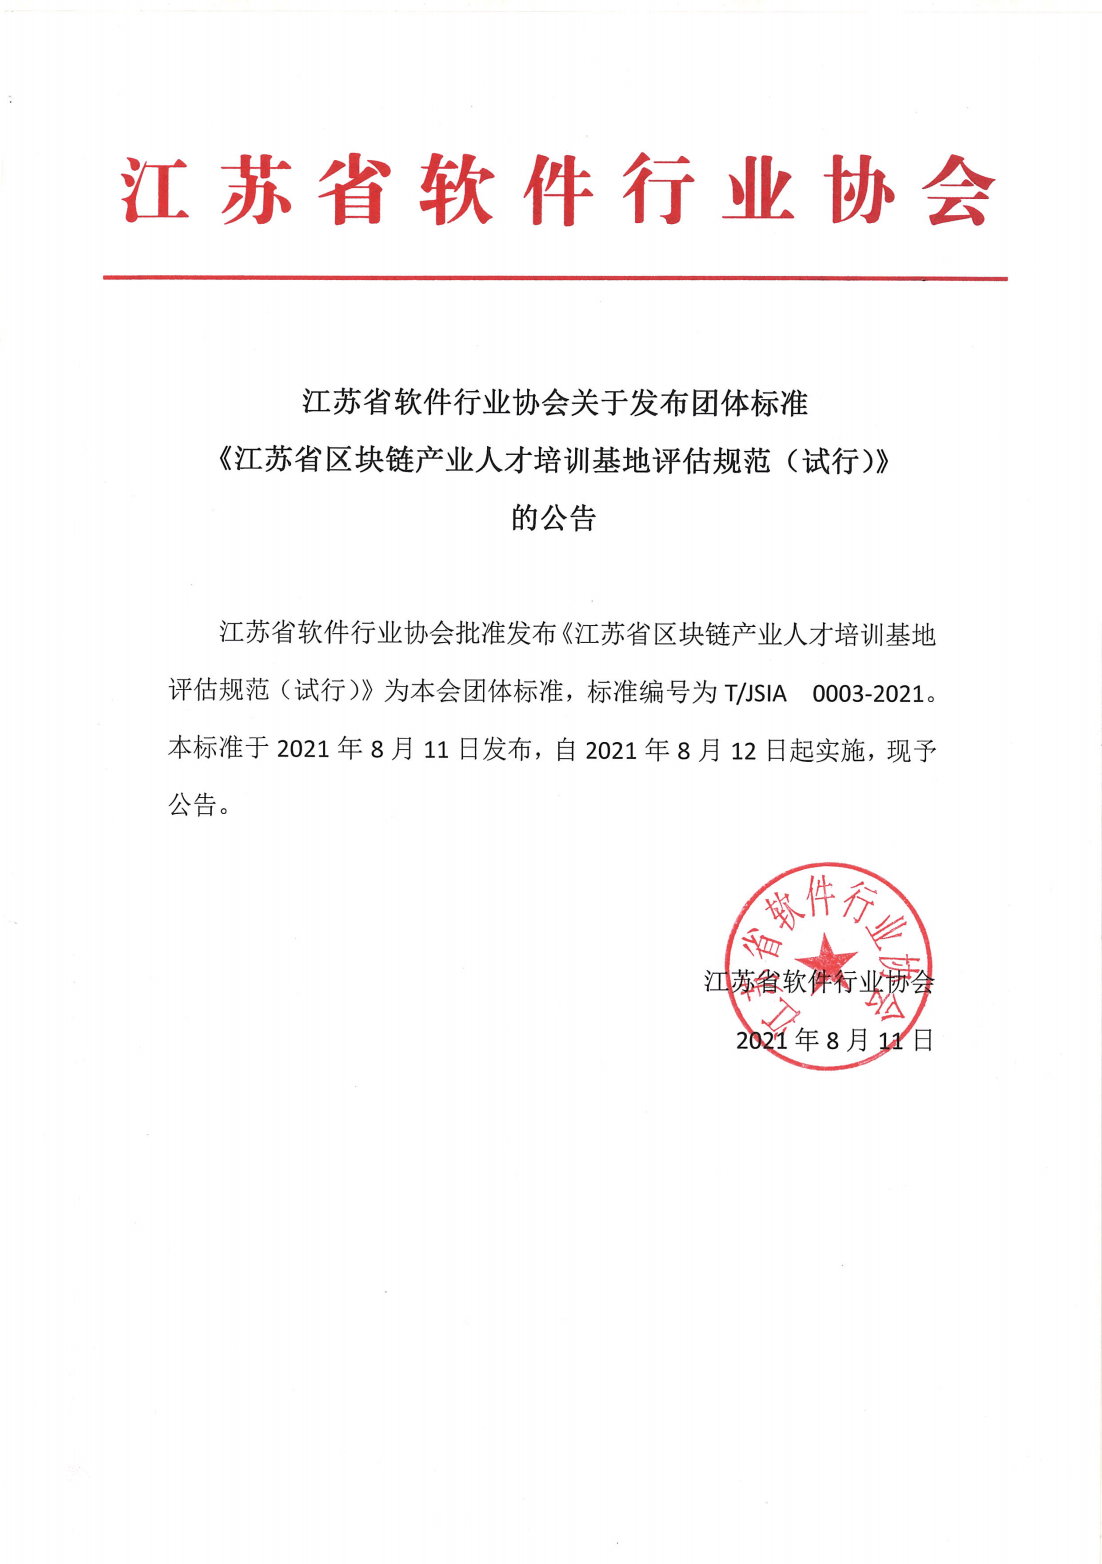 标准发布公告-江苏省区块链产业人才培训基地评估规范（试行）_00.png